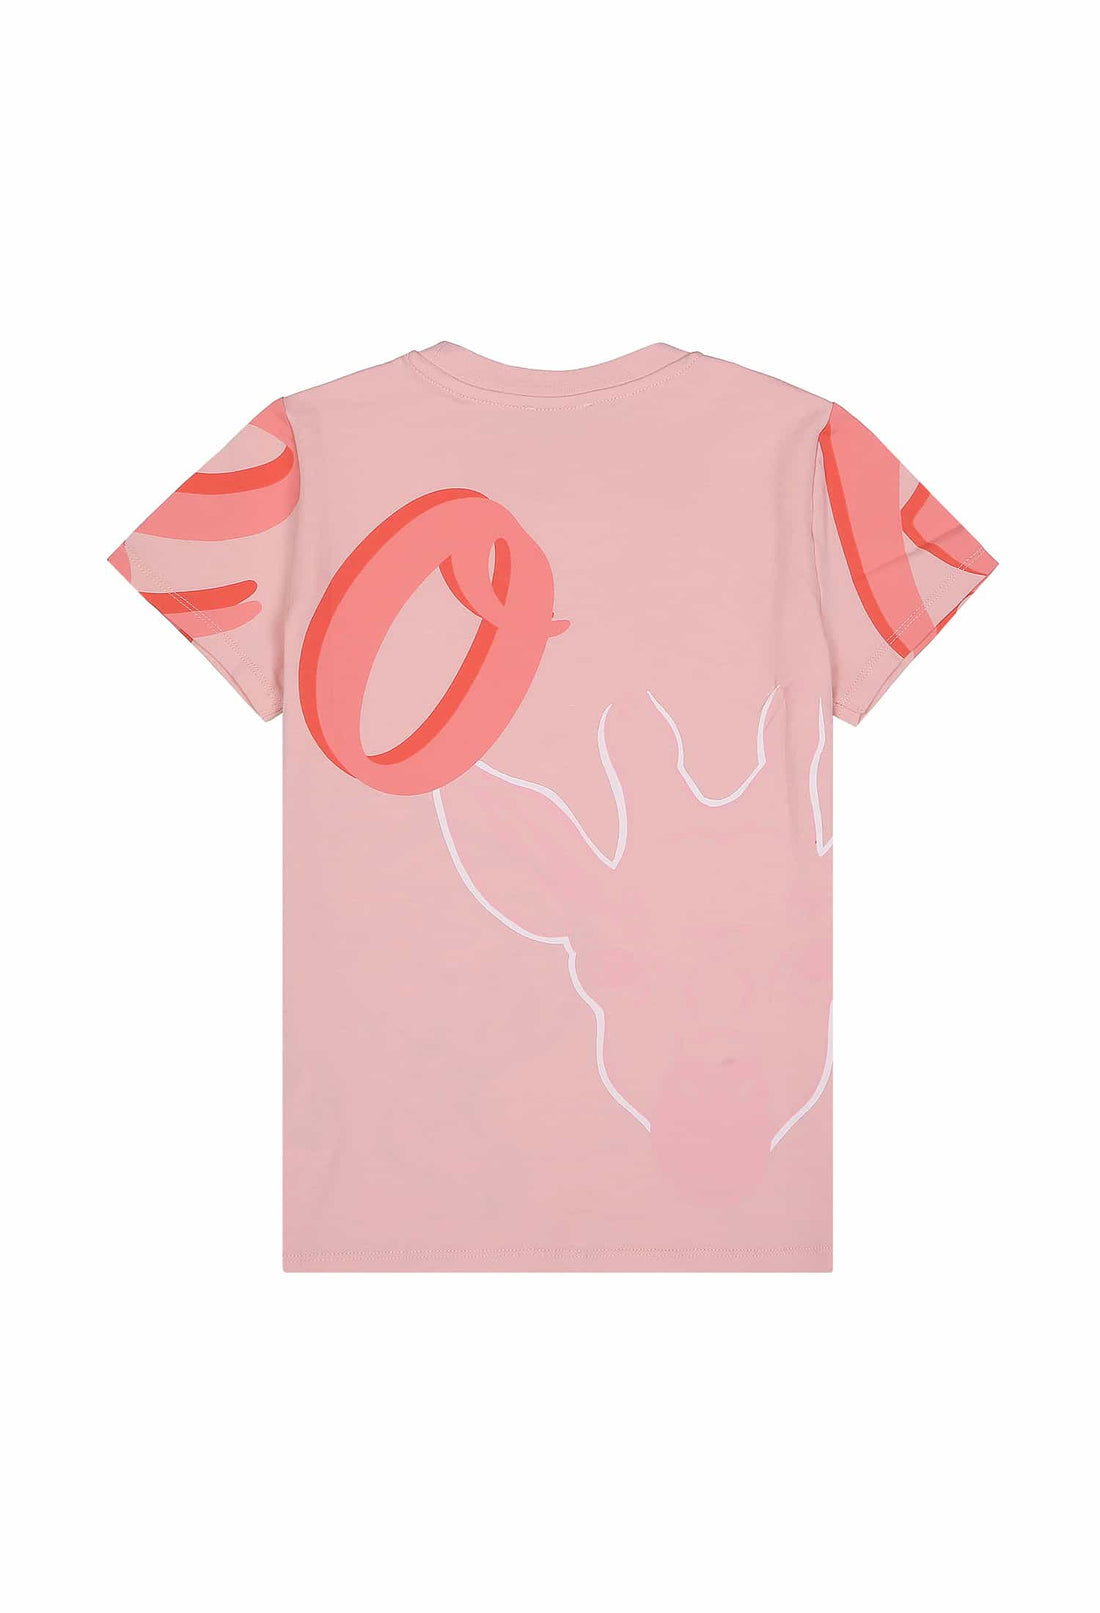 KENZO ;Koszulka różowa z nadrukiem Kenzo KENZO KIDS 123 K15615 123/9Rc